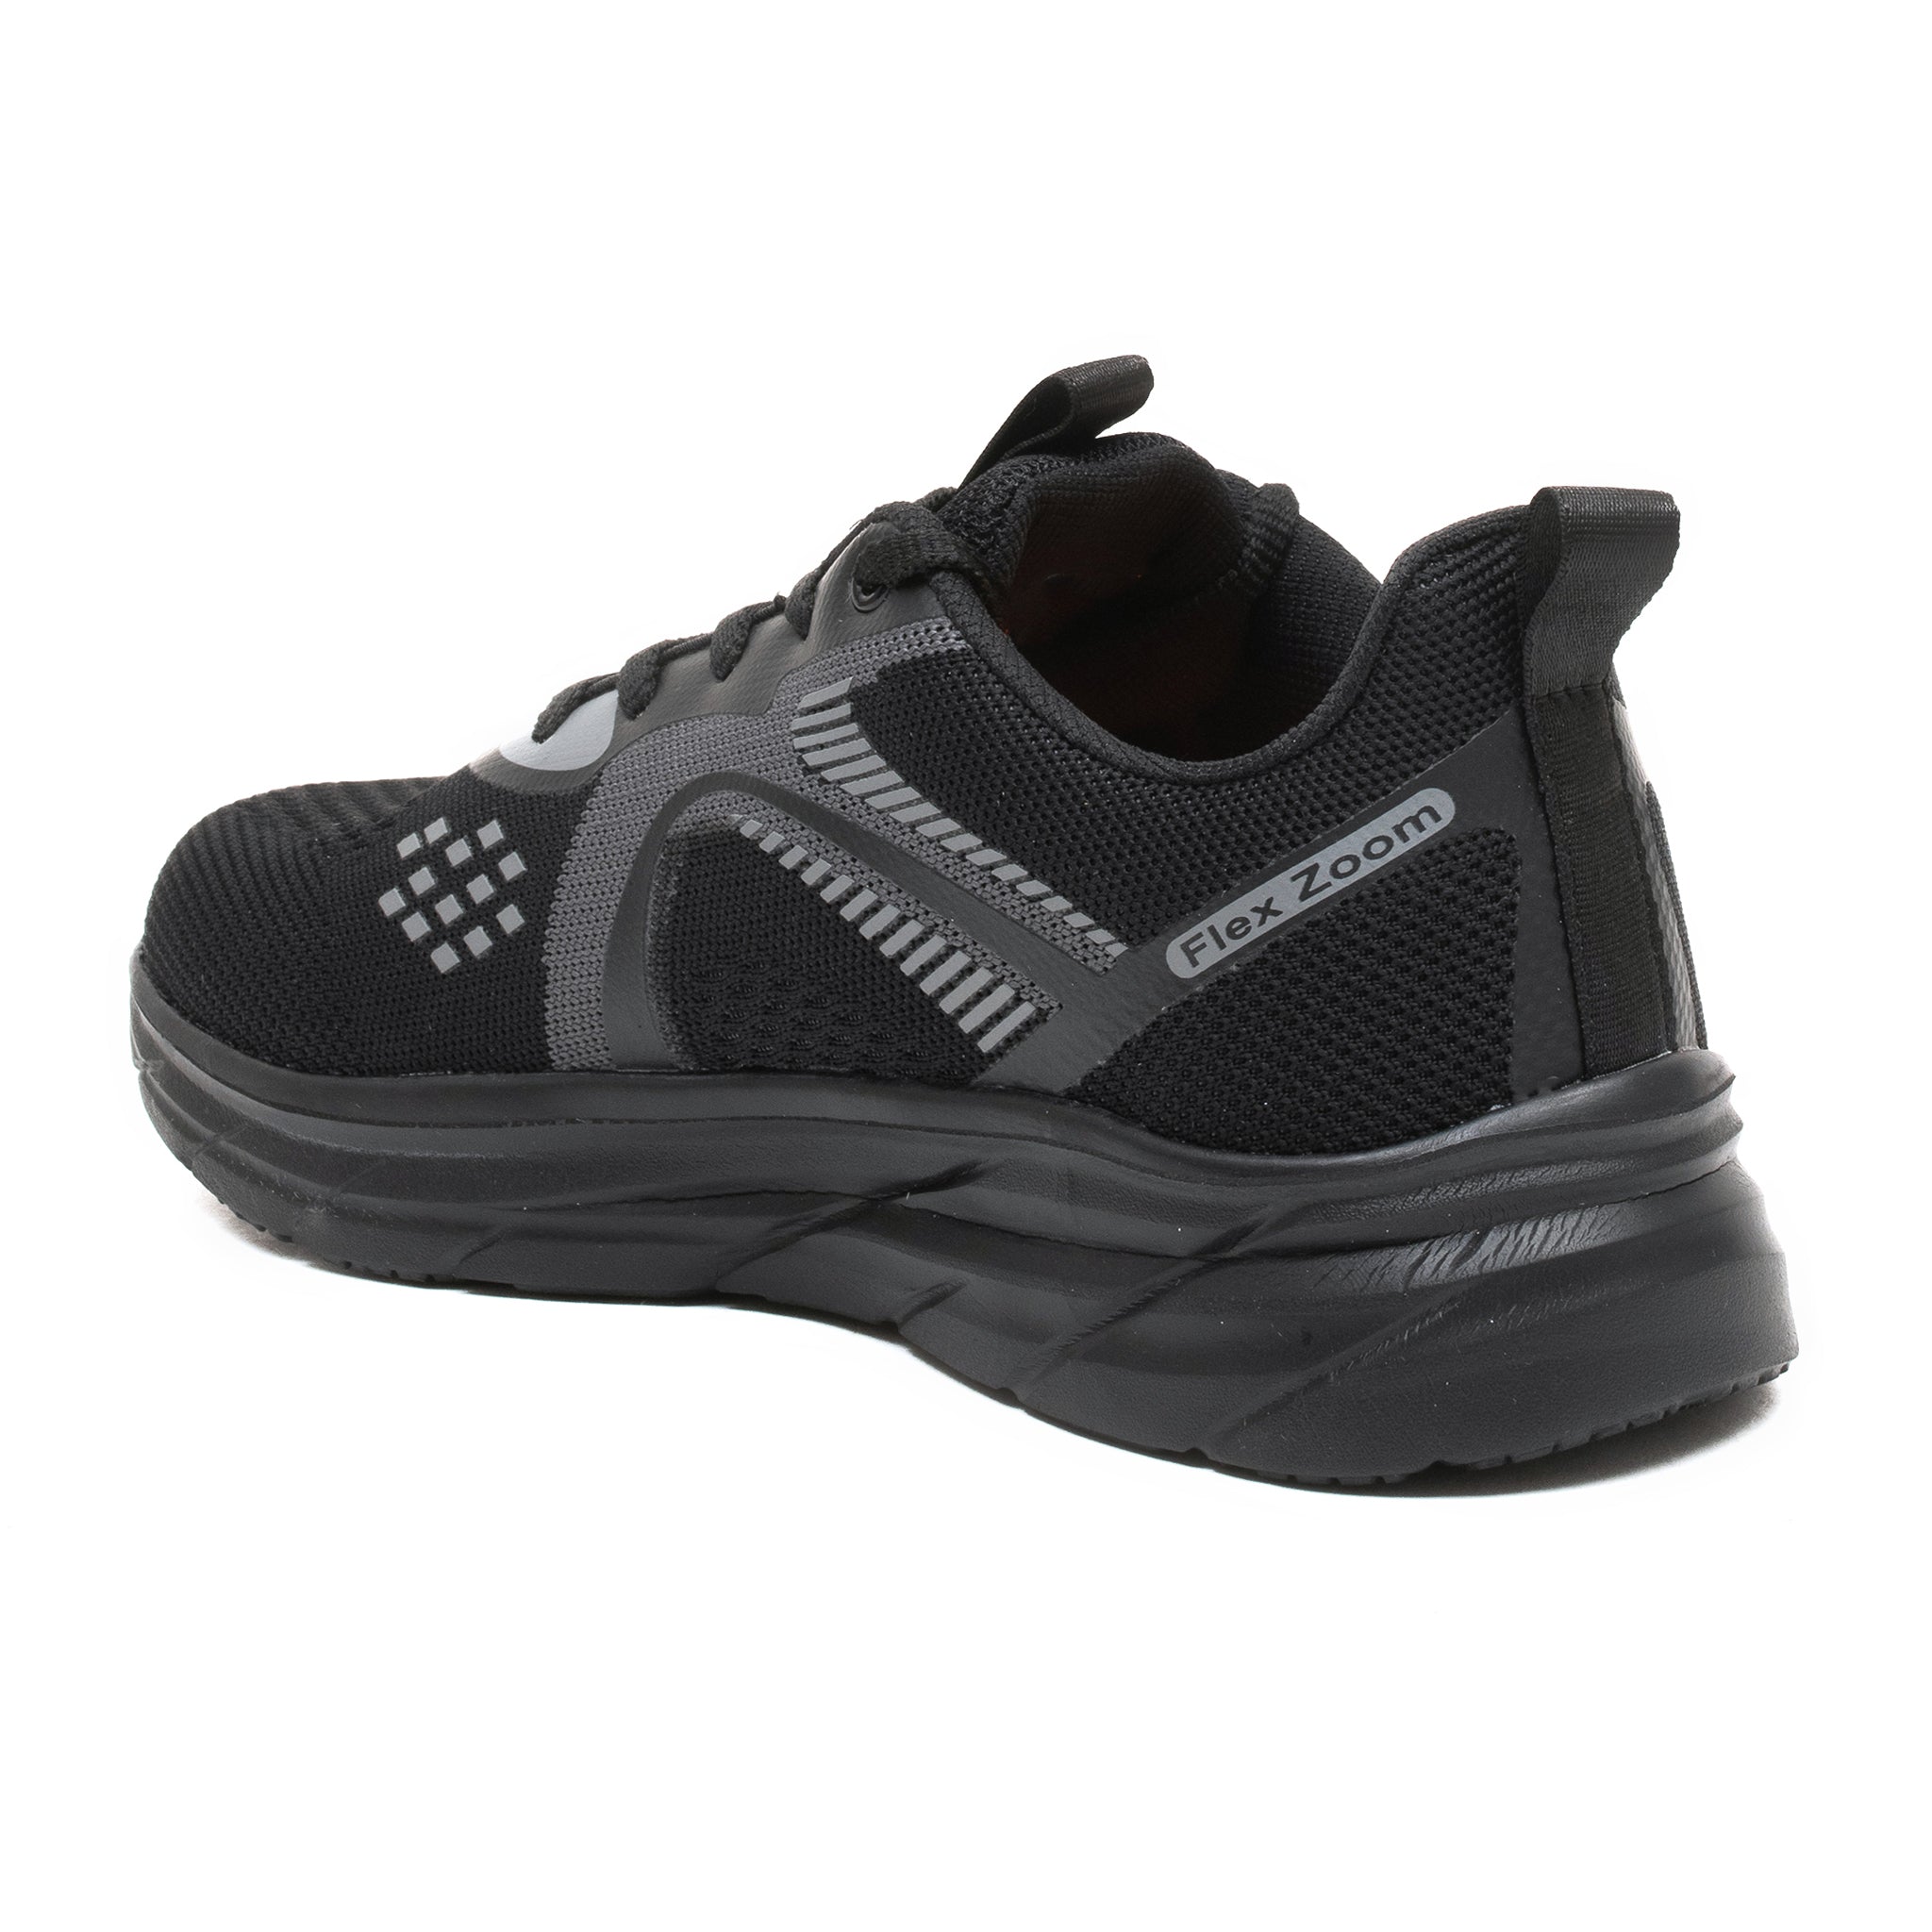 Impakto Night Racer Men's Black Running Shoes